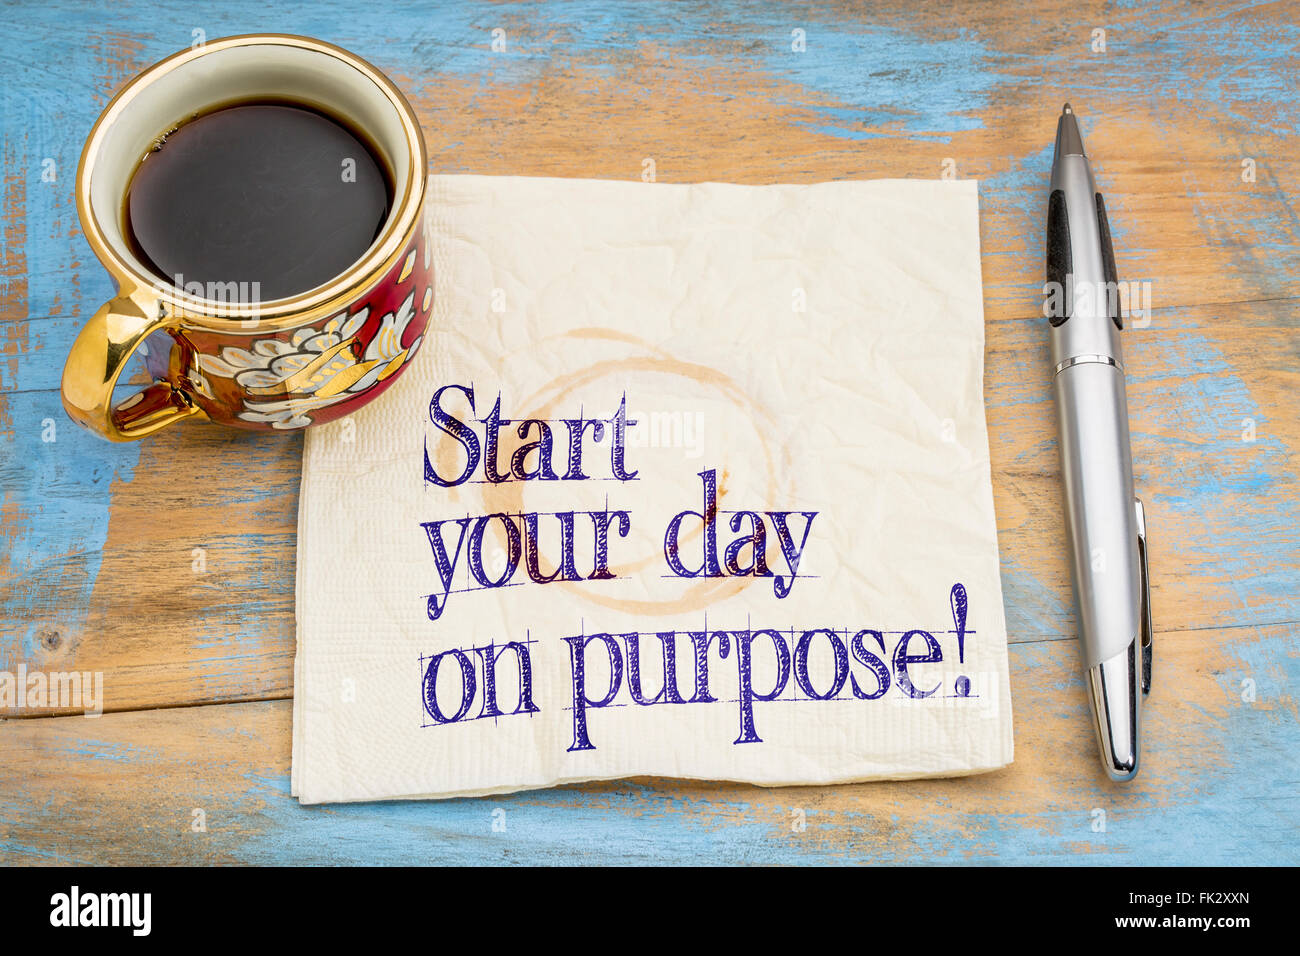 Iniziate la vostra giornata a scopo! Una consulenza motivazionale o promemoria su un tovagliolo con una tazza di caffè Foto Stock